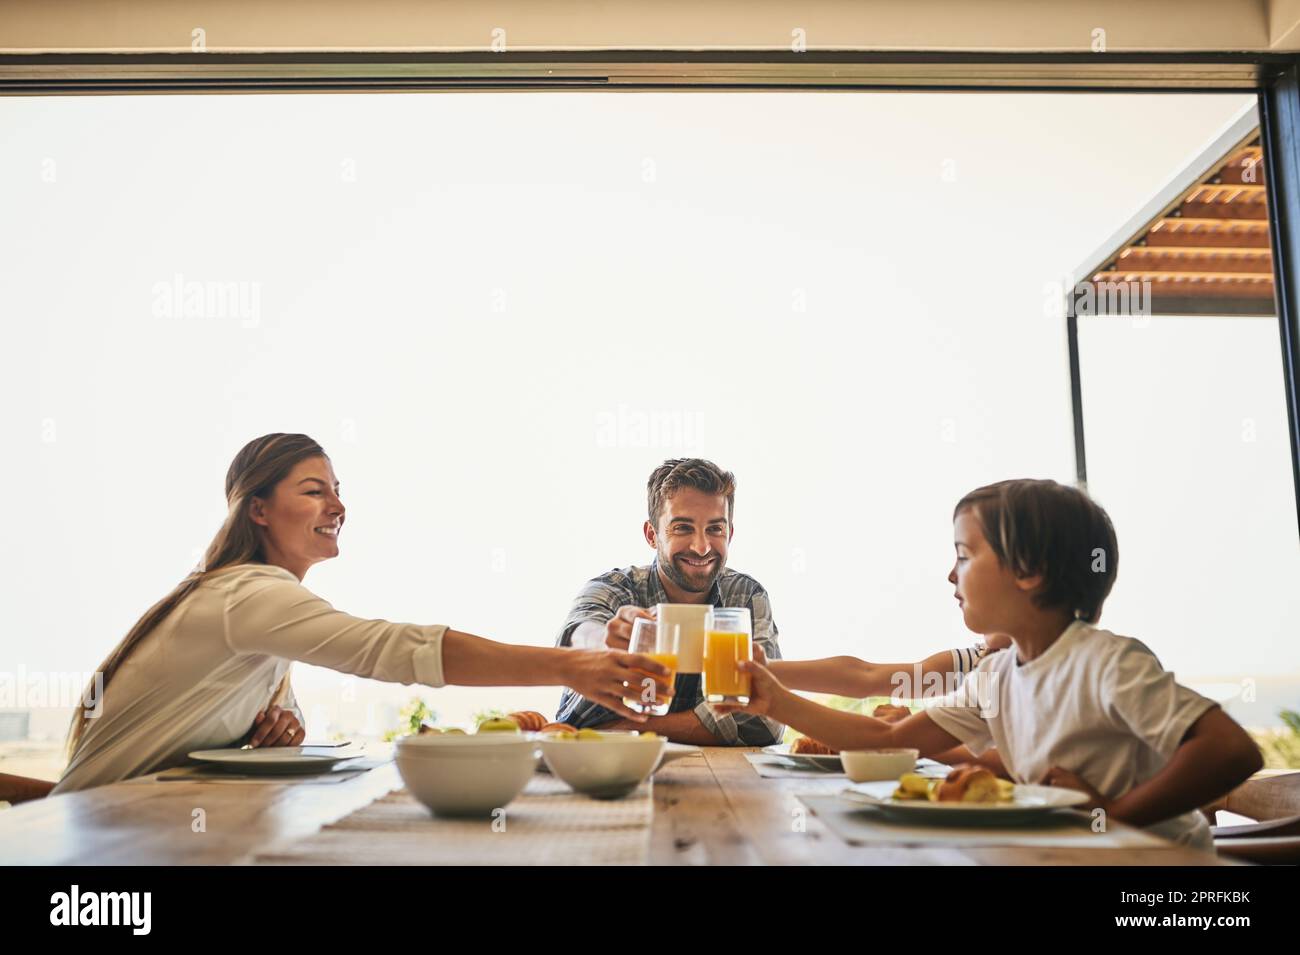 Der beste Start in den Tag ist mit der Familie. Eine Familie beim gemeinsamen Frühstück zu Hause. Stockfoto